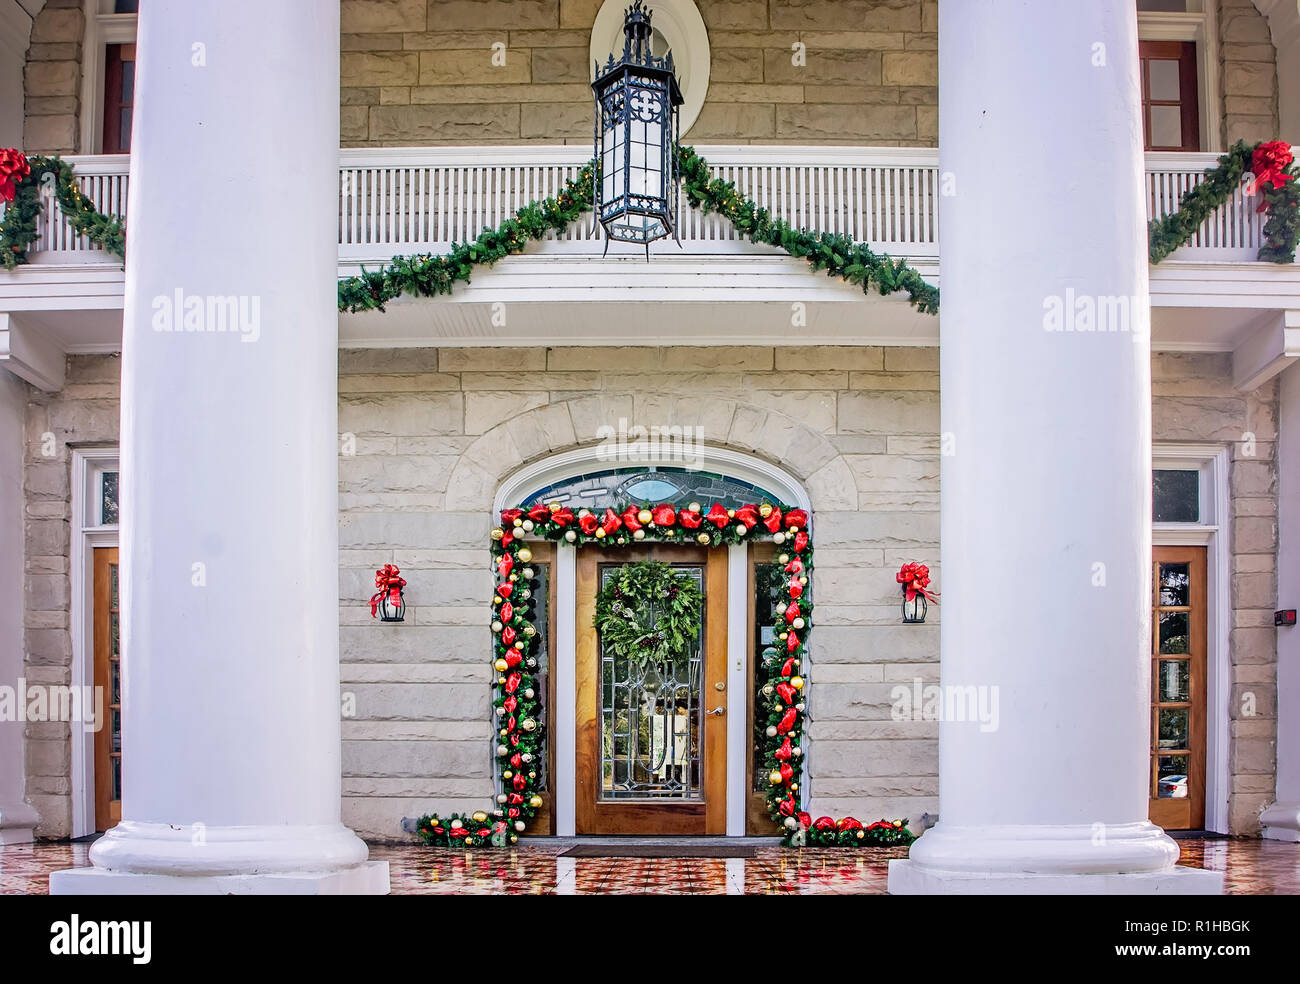 Les piliers, un lieu d'événements, est décorée pour Noël, 18 décembre 2017, à Mobile, en Alabama. Banque D'Images